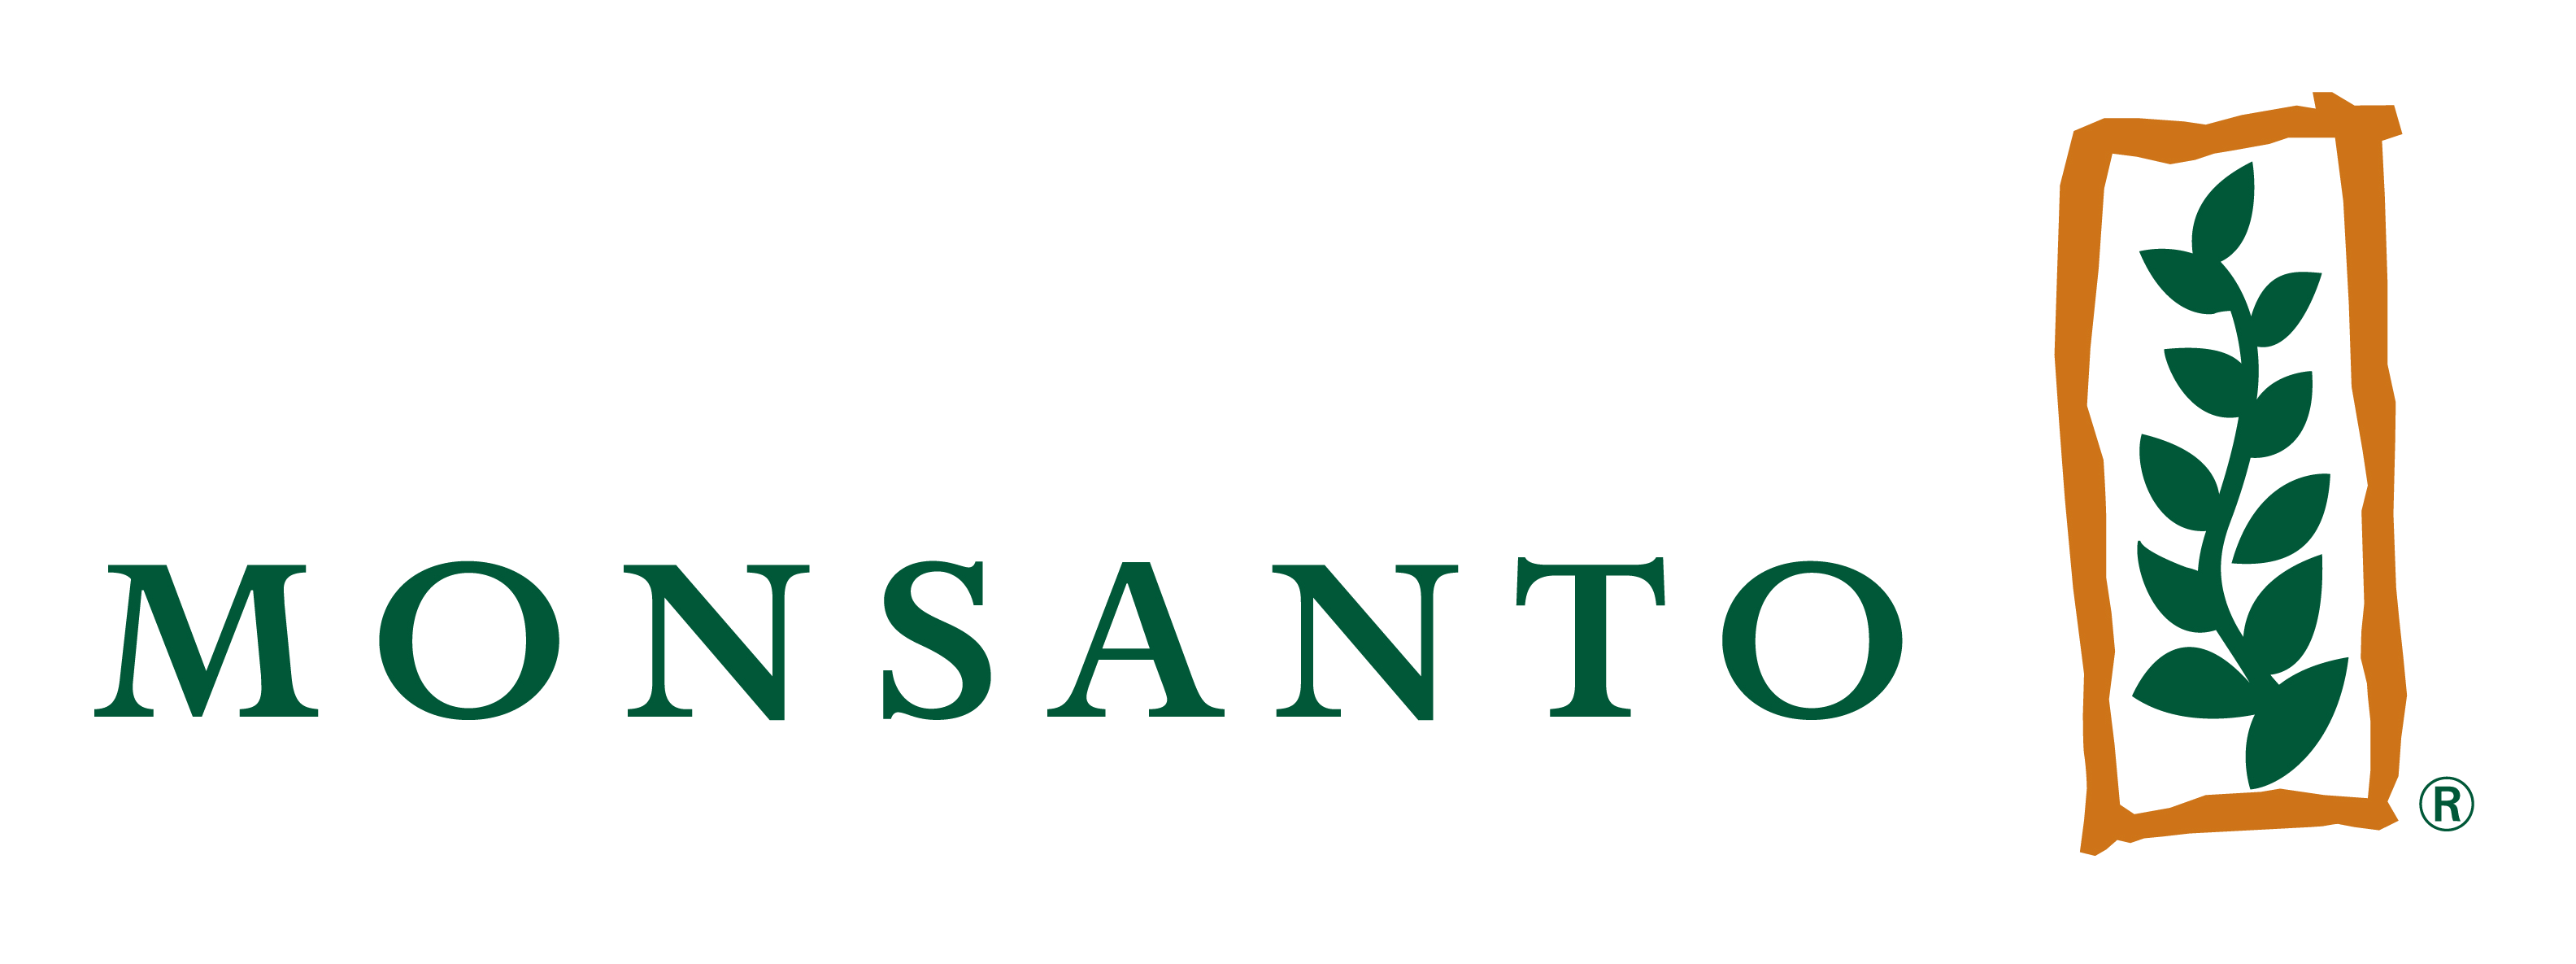 Monsanto Logo PNG Image